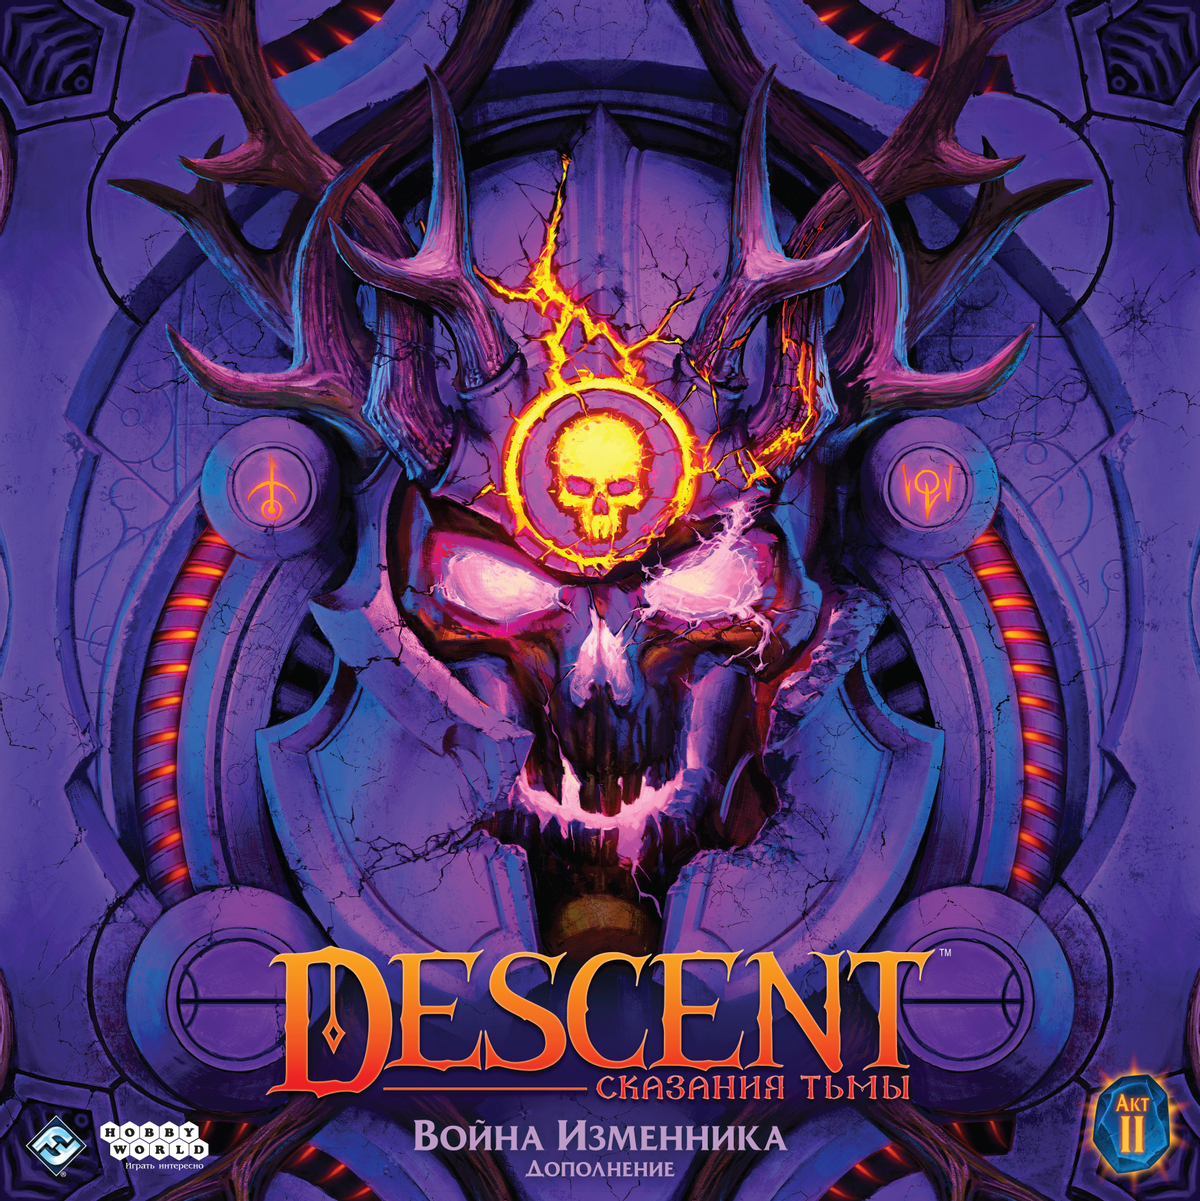 Обзор Descent: Сказания тьмы. Война Изменника — отличное дополнение для шикарной игры, в котором нет ничего лишнего